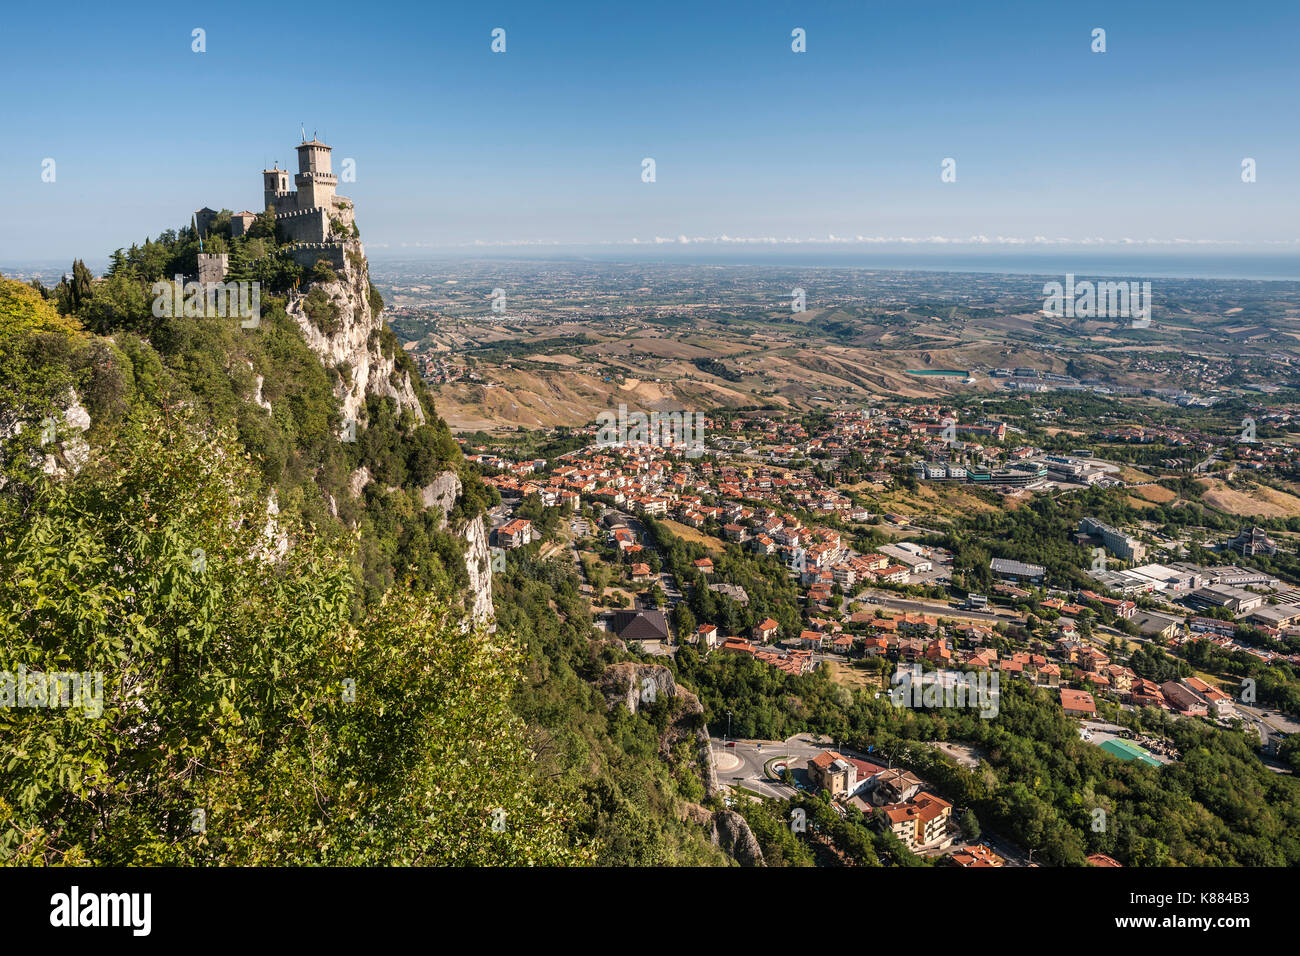 Guaita fortaleza/torre (aka Rocca/Torre Guaita) en el monte Titán (Monte Titano) en San Marino. Foto de stock